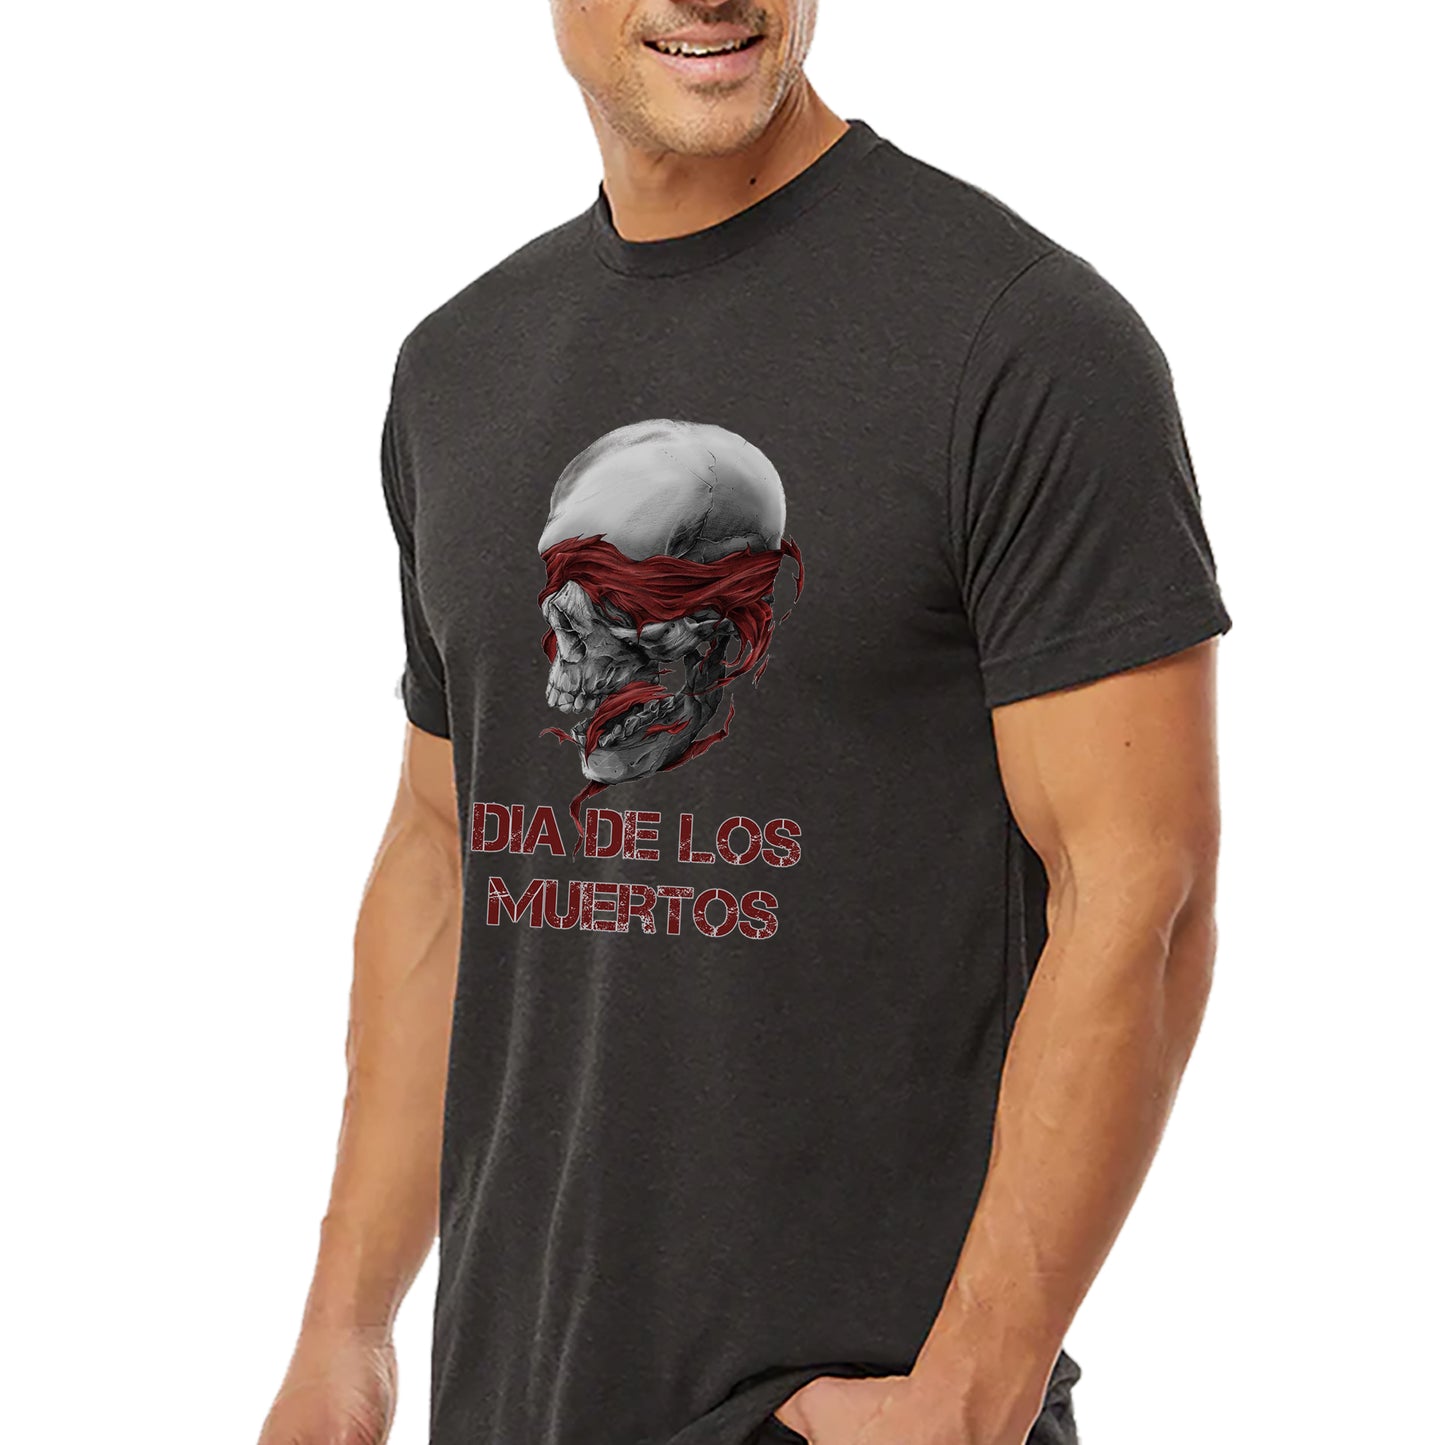 Skull of Muertos T-shirt